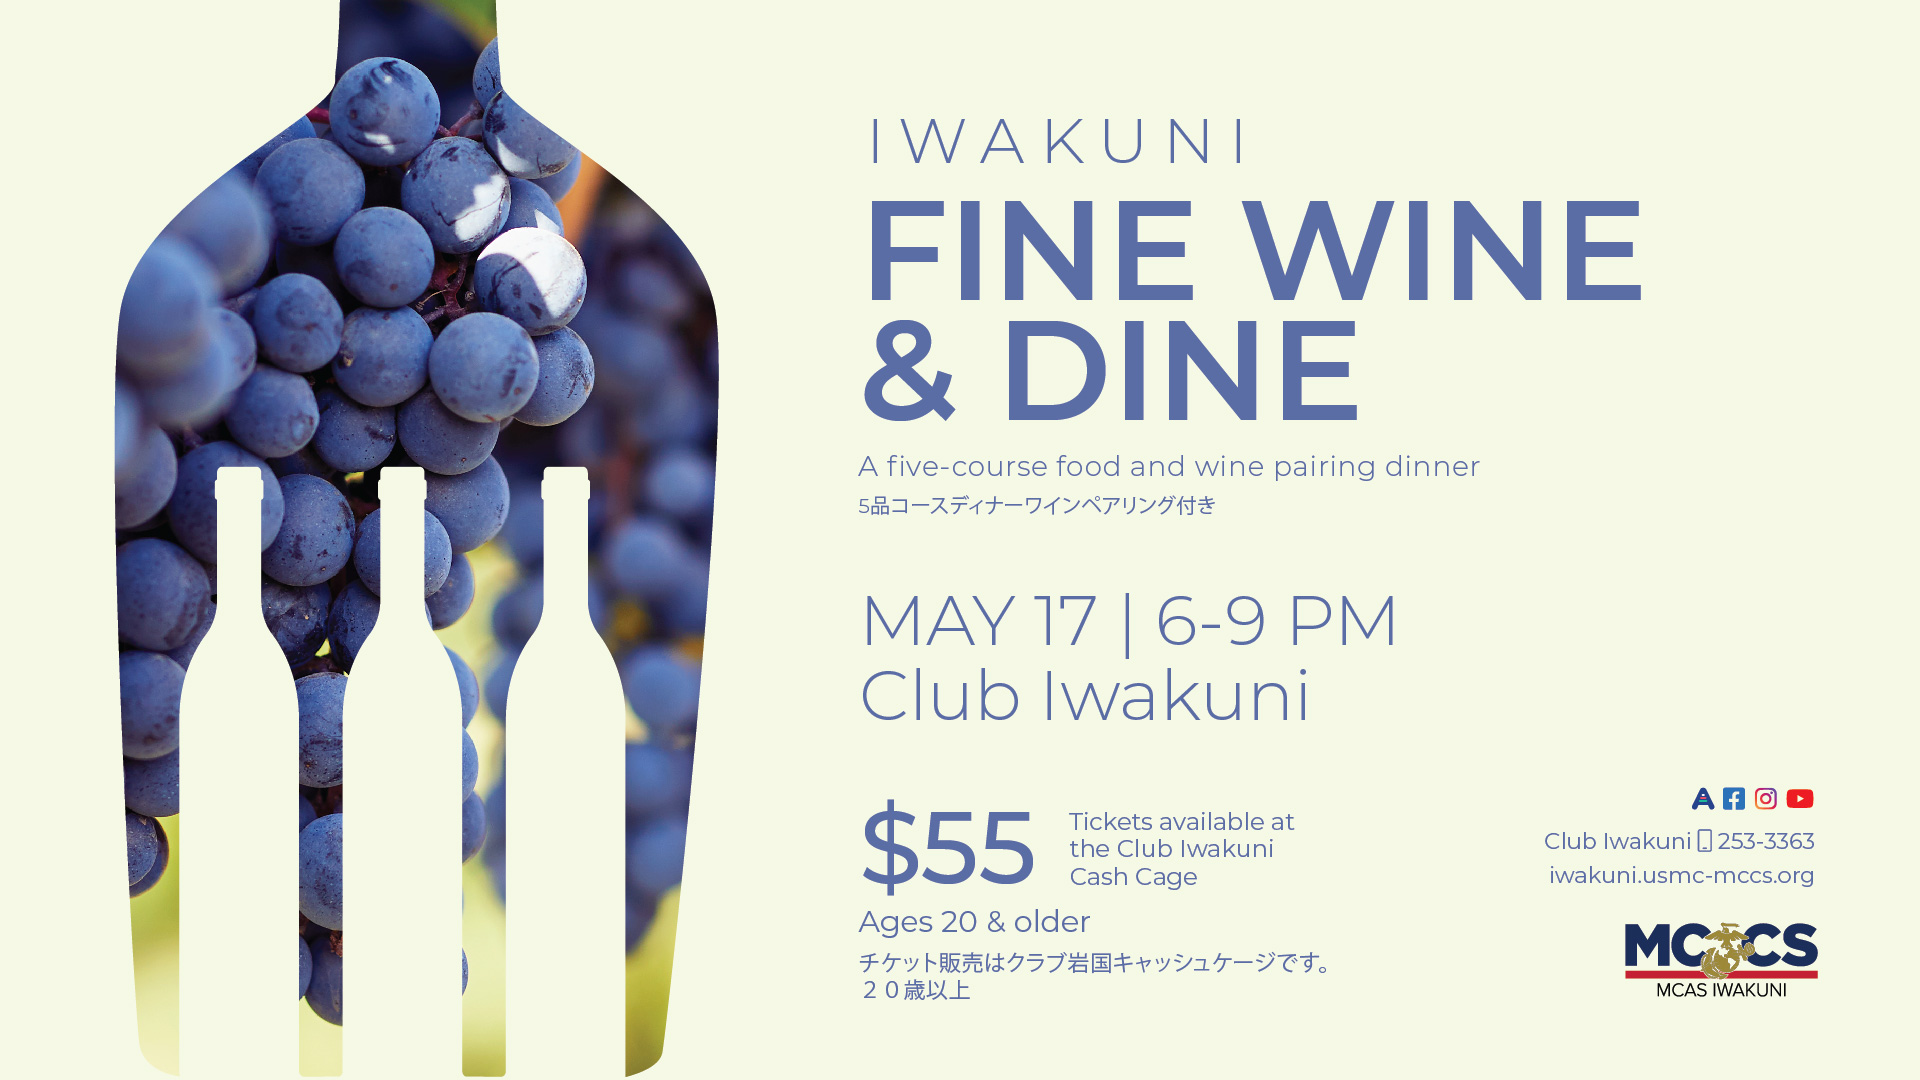 Iwakuni Fine Wine & Dine